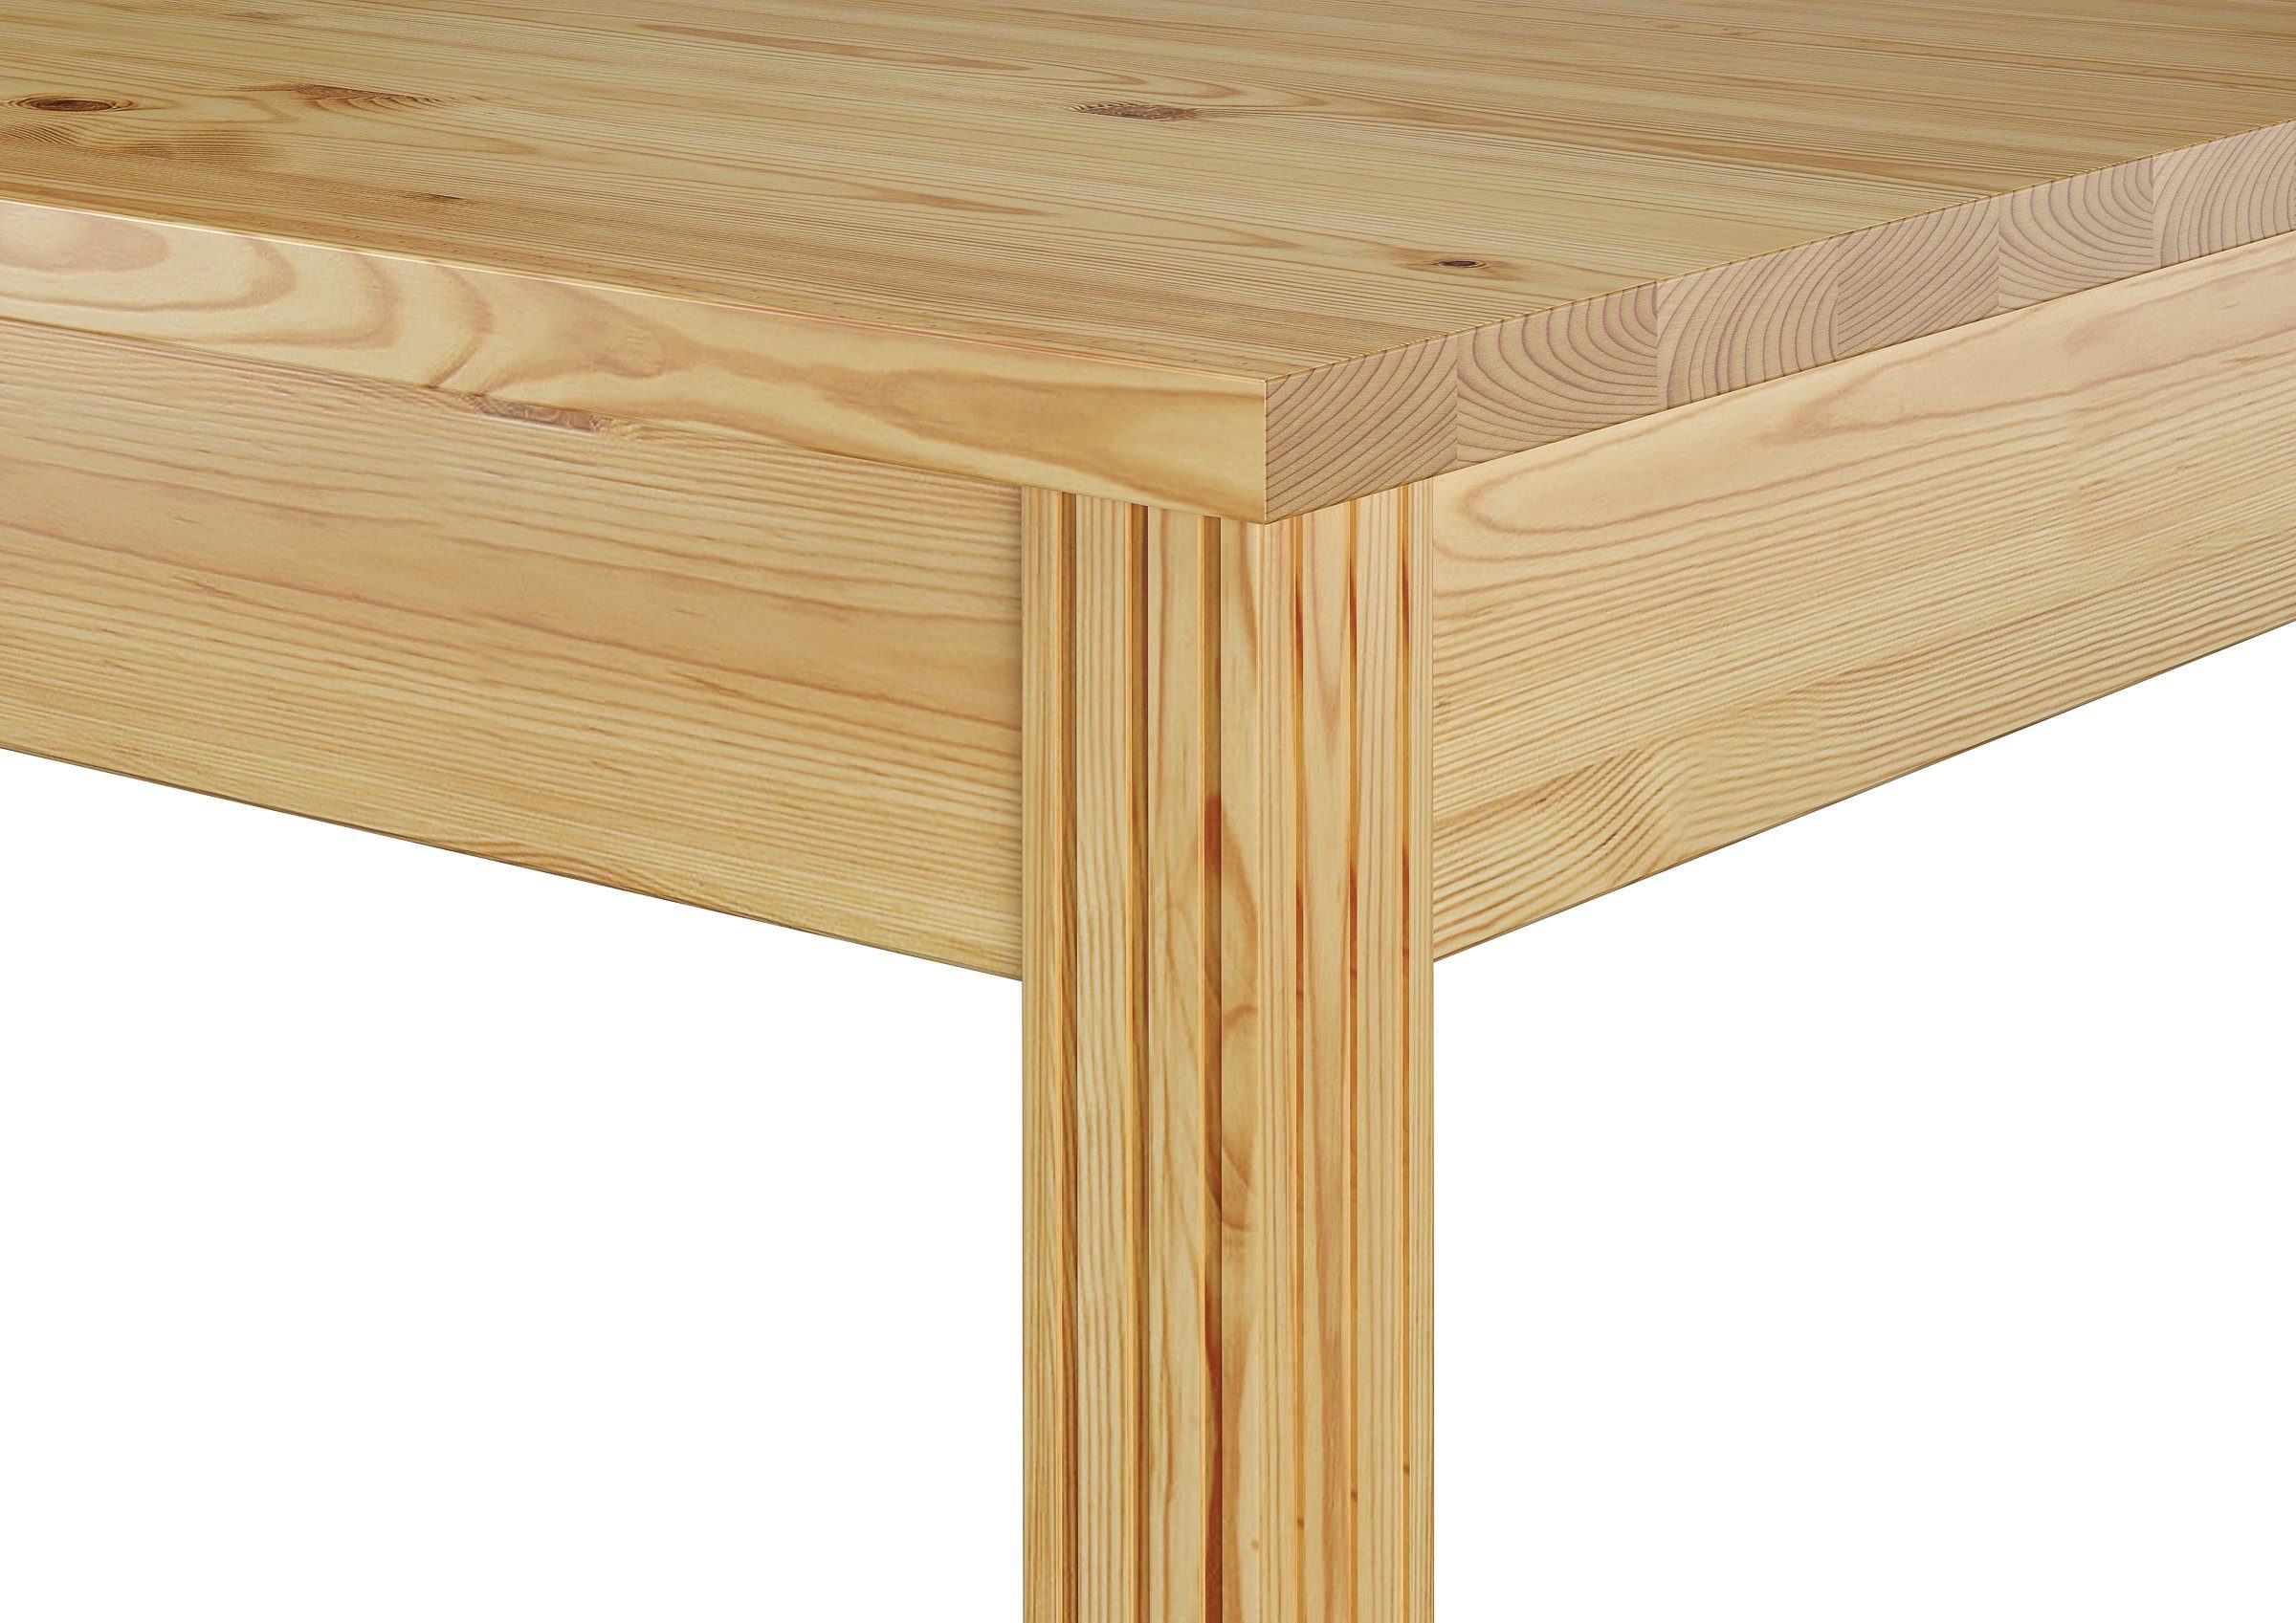 und 4 Massivholz mit itzgarnitur Vollholzmöbel Essgruppe ERST-HOLZ Kiefer Stühle Tisch